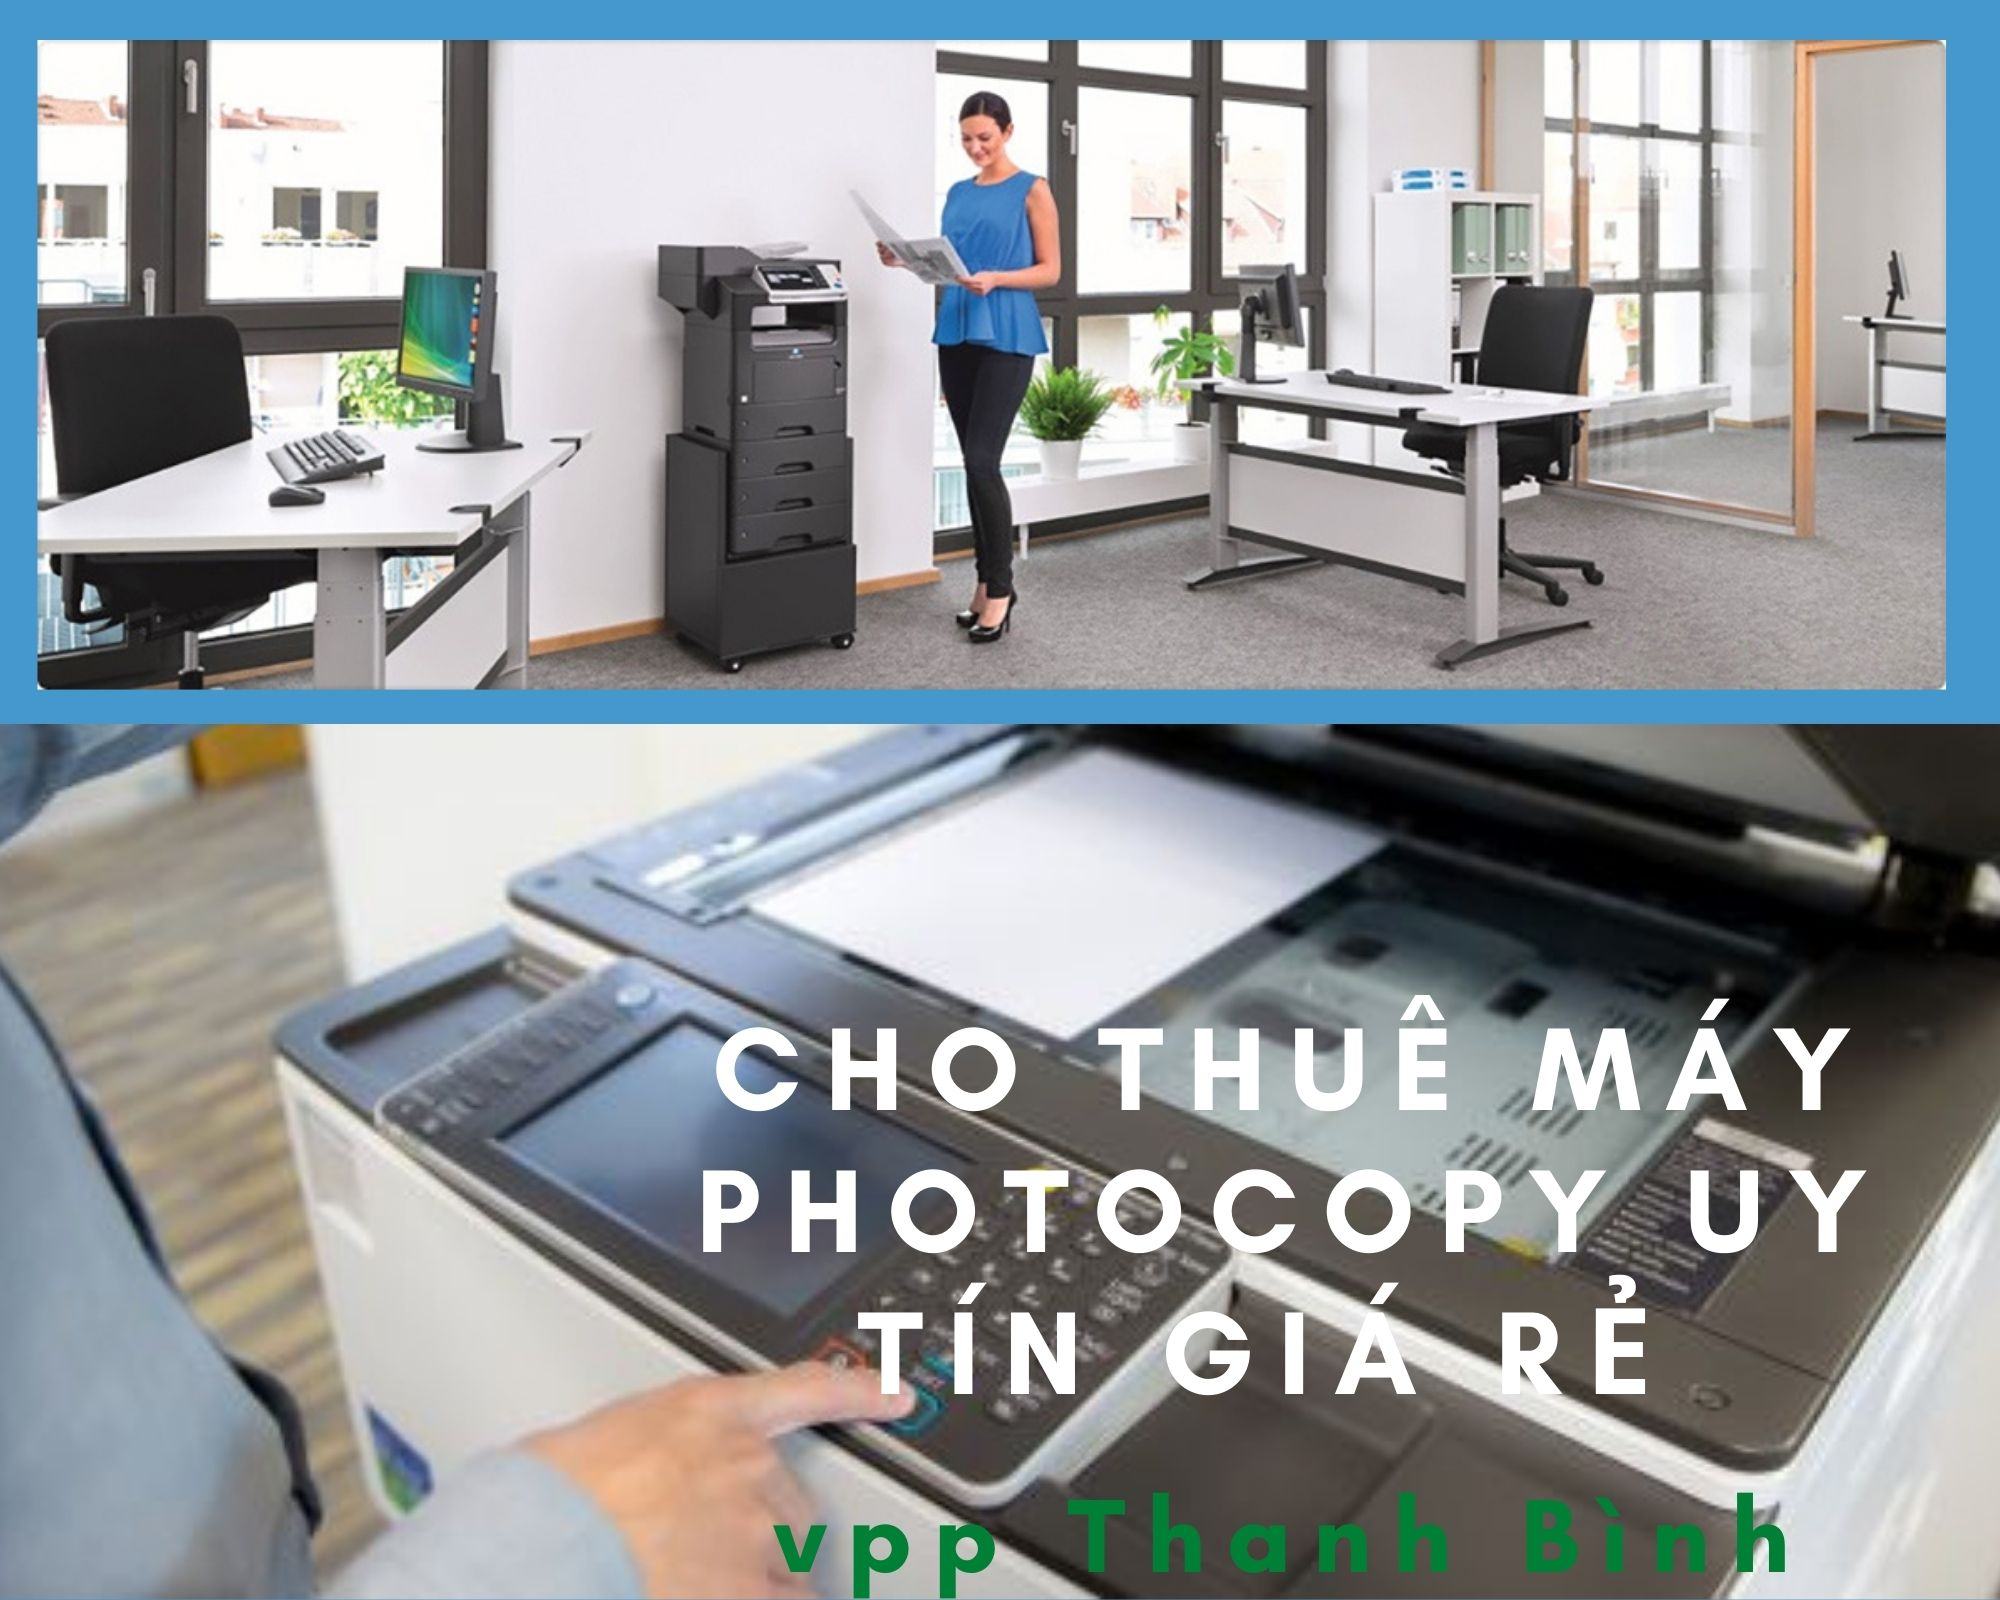 Cho thuê máy photocopy là gì ? 